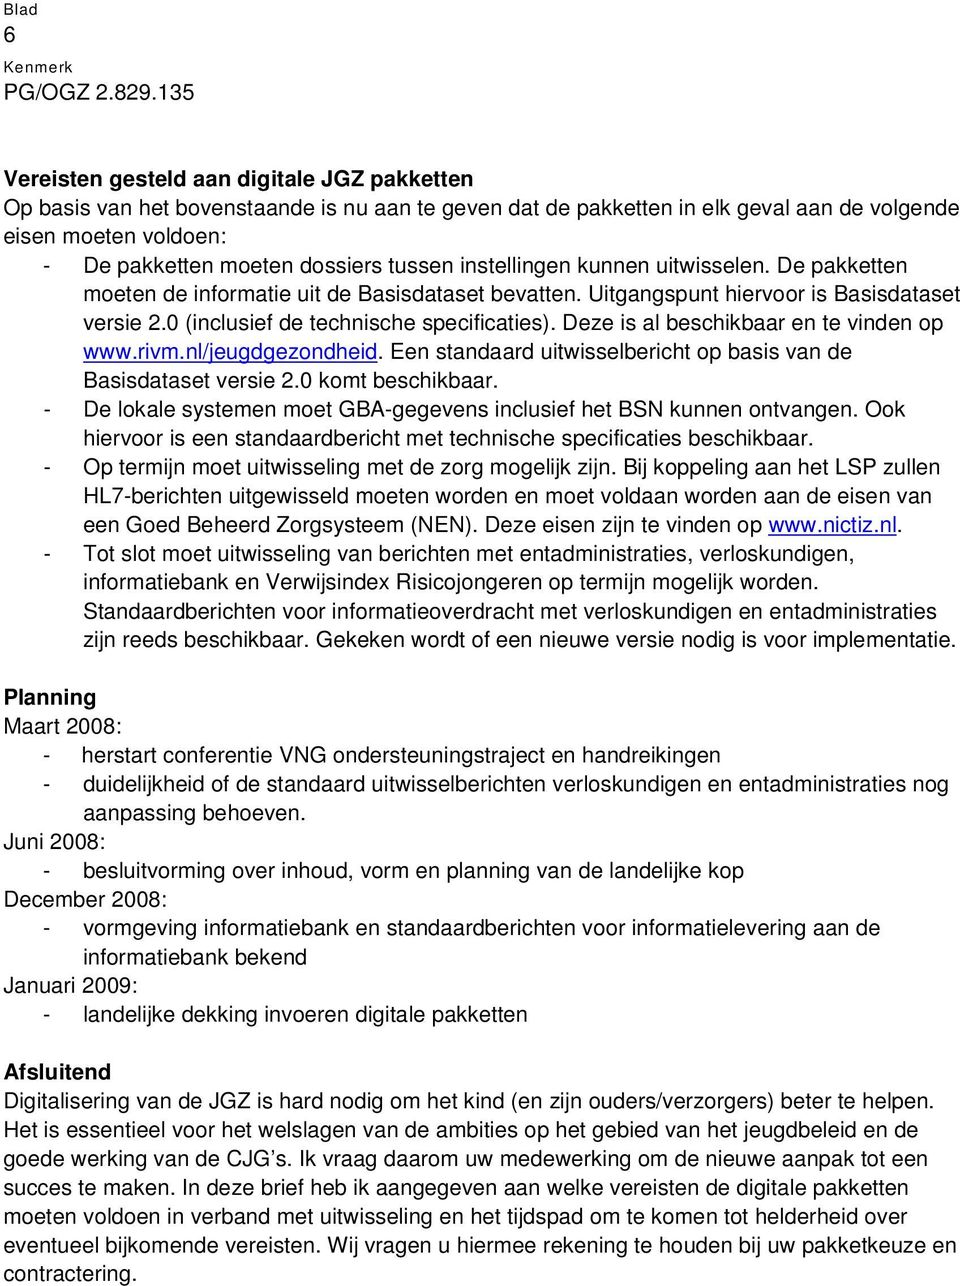 Deze is al beschikbaar en te vinden op www.rivm.nl/jeugdgezondheid. Een standaard uitwisselbericht op basis van de Basisdataset versie 2.0 komt beschikbaar.